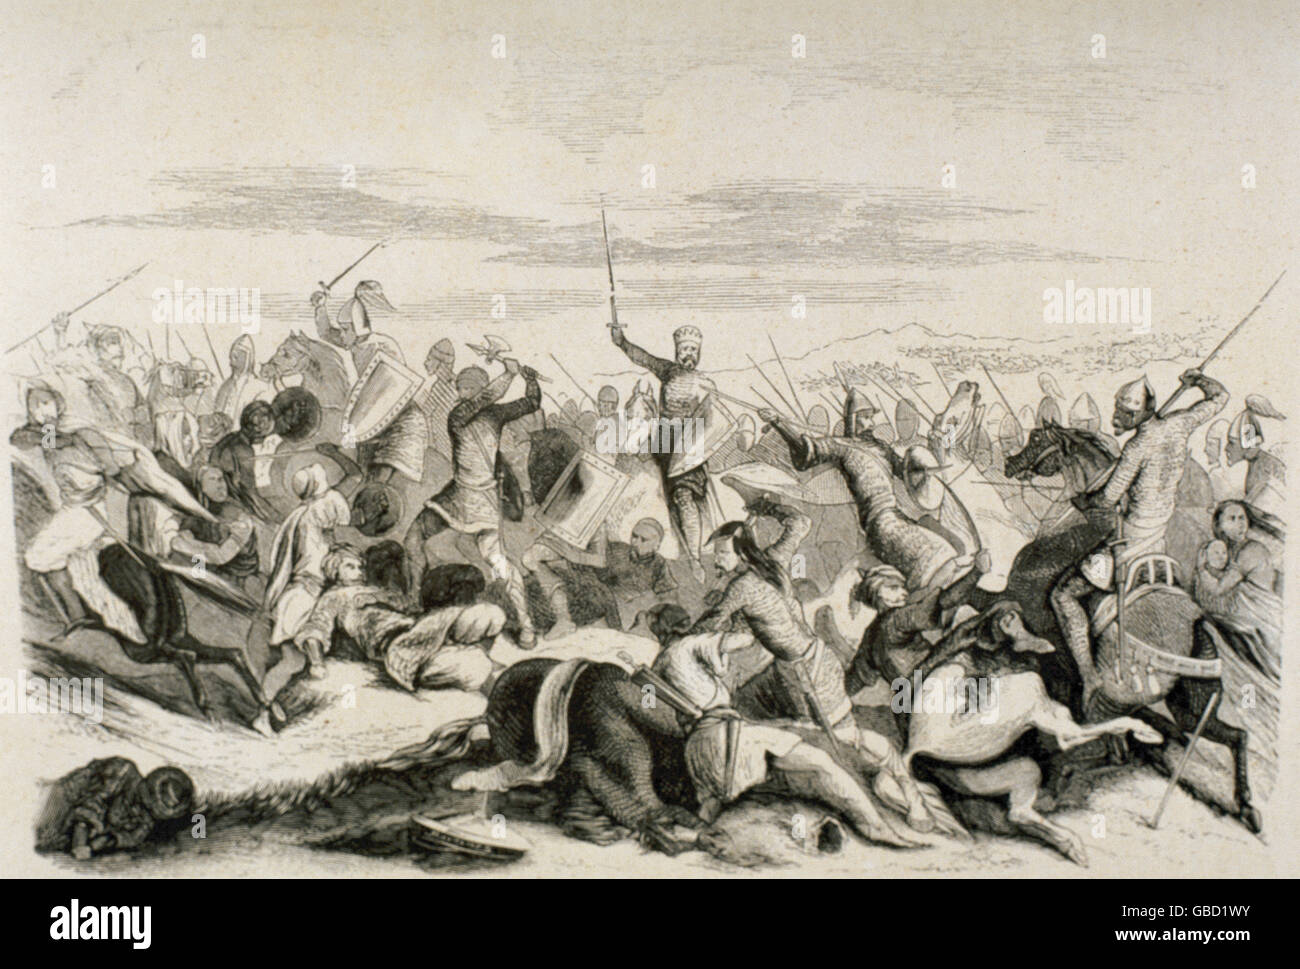 Hinterhalt von Alhandega (August, 939). Nach der Schlacht von Simancas durchgeführt durch den König von Leon Ramiro II (ca.900-951) gegen die muslimische Armee von Emir und Kalifen von Córdoba Abd-Ar-Rahman III (889-961). Kupferstich, 19. Jahrhundert. Stockfoto